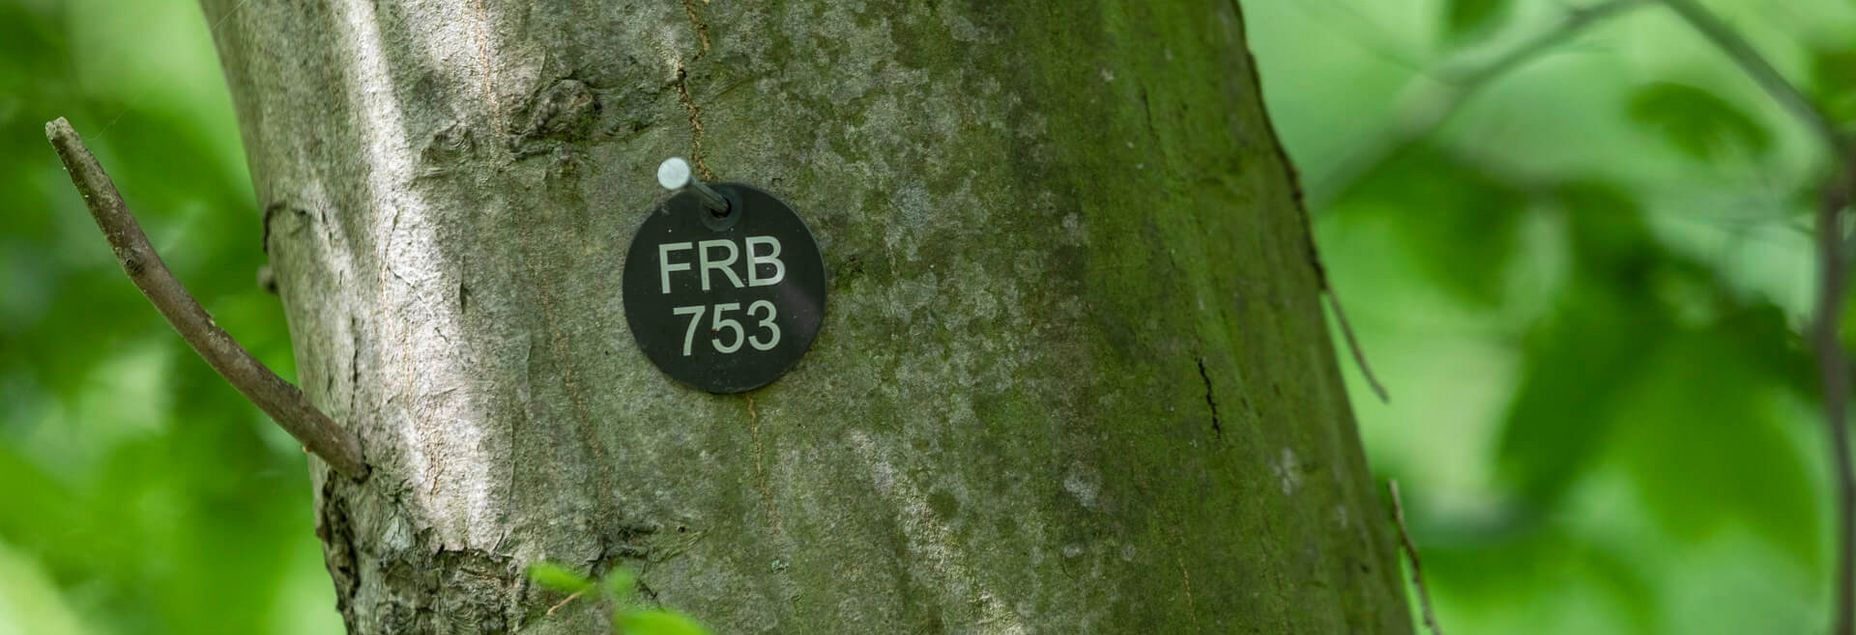 FRB 753 - Plakette